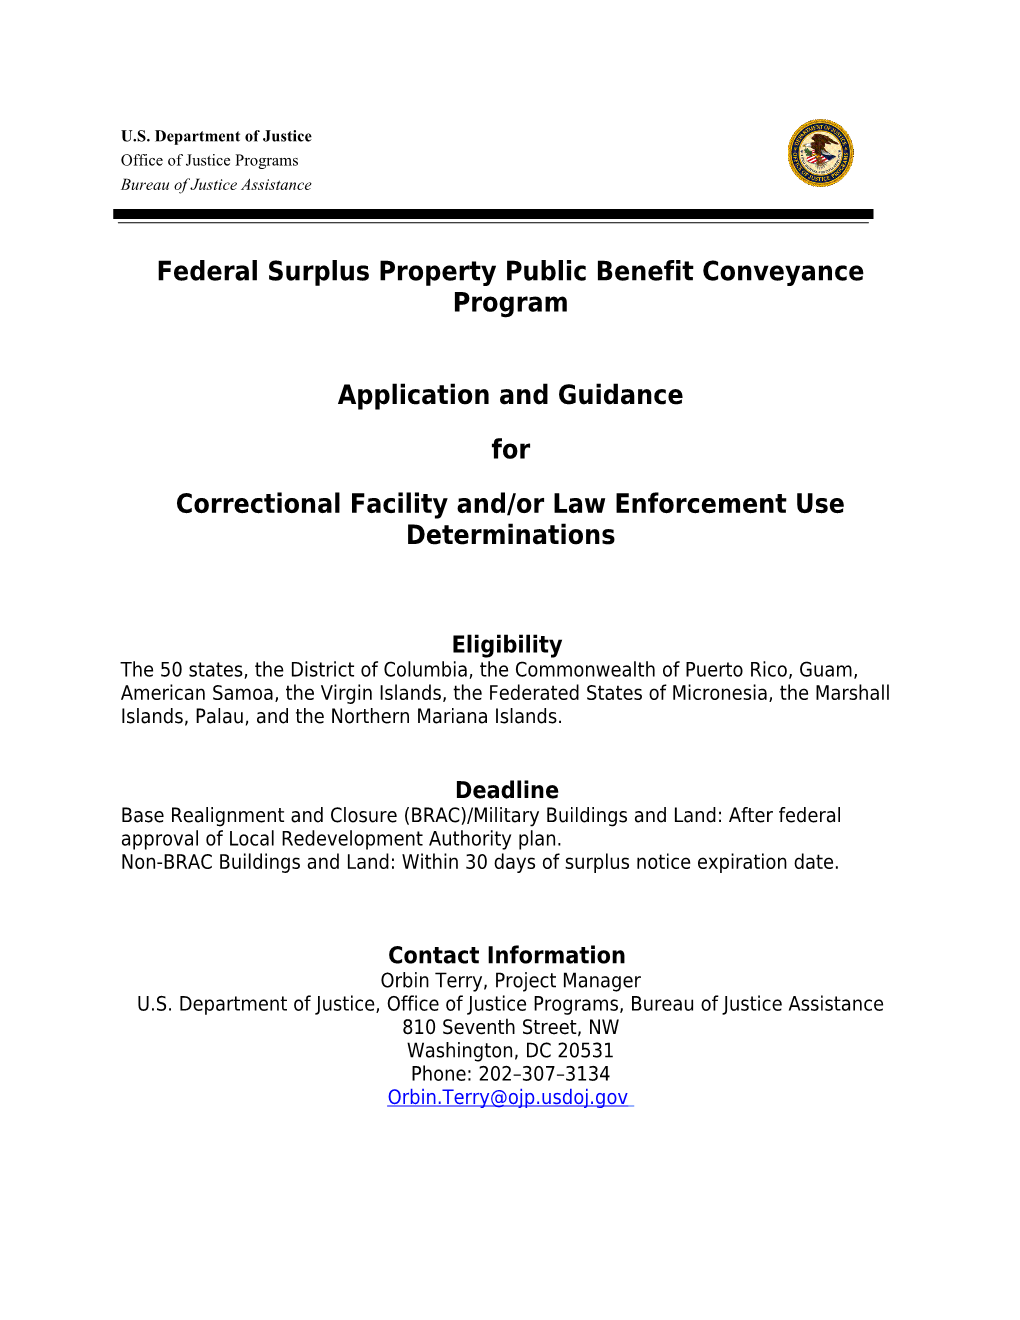 Federal Surplus Property Public Benefit Conveyance Program